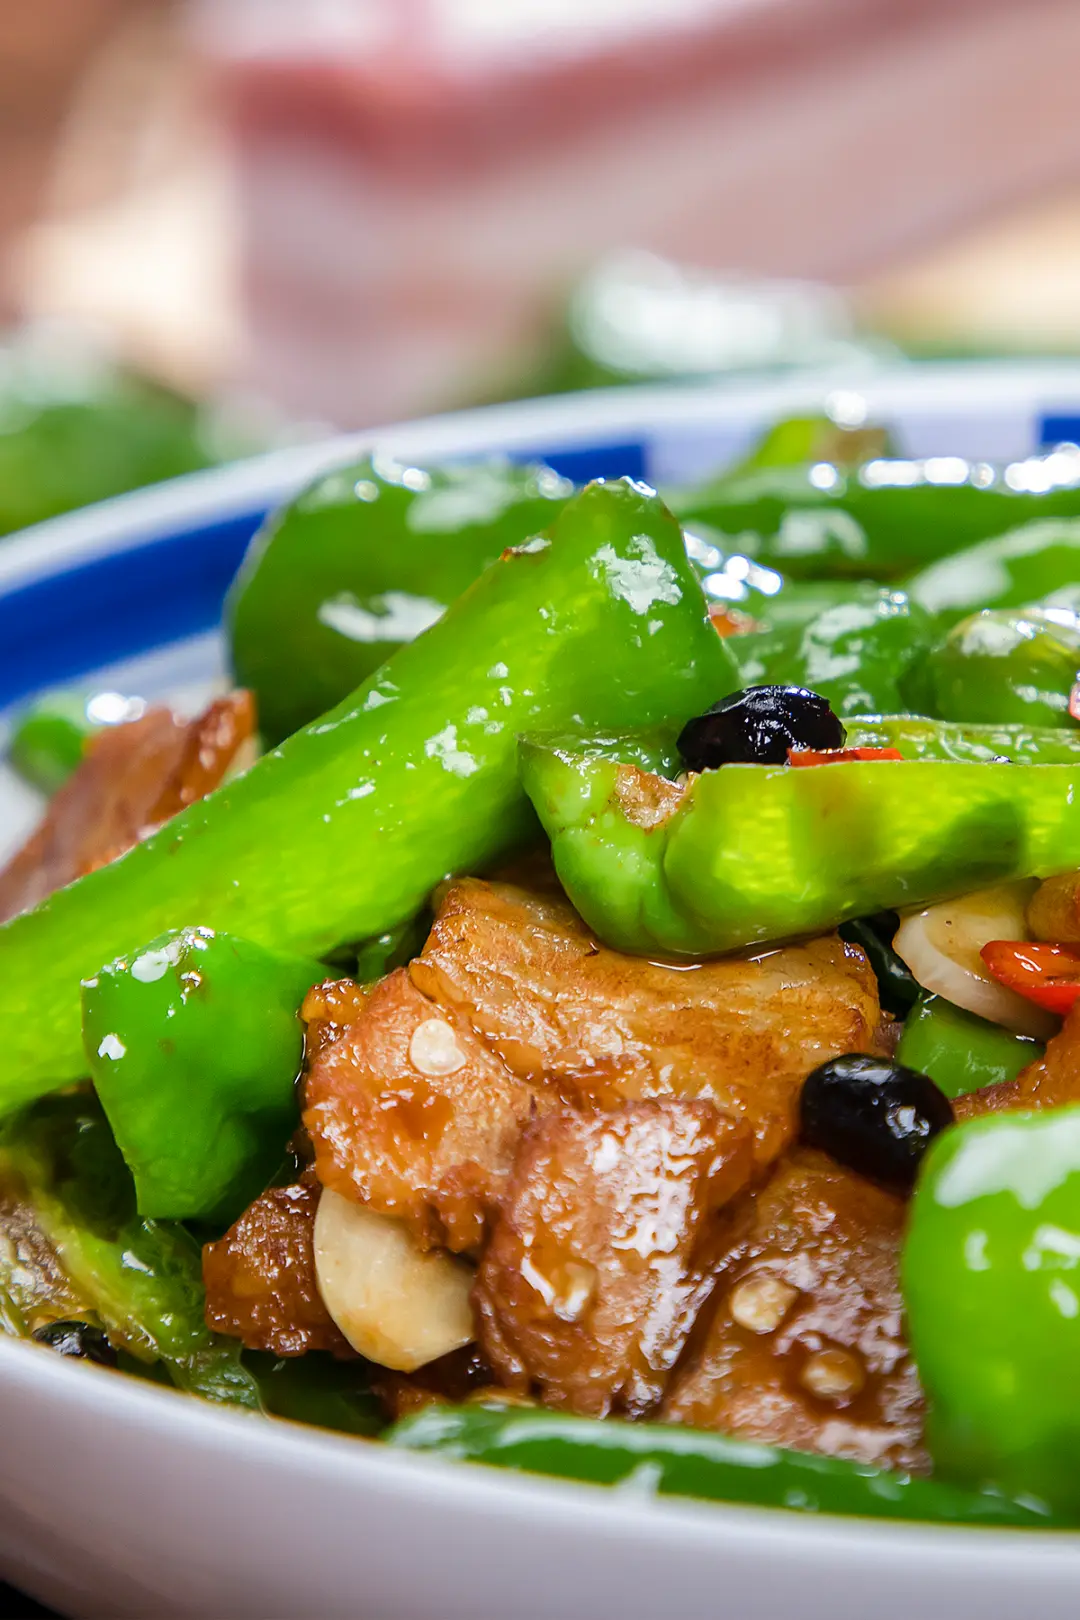 余干辣椒炒肉，脆糯的余干辣椒是江西人最爱的辣椒之一。 图/图虫·创意